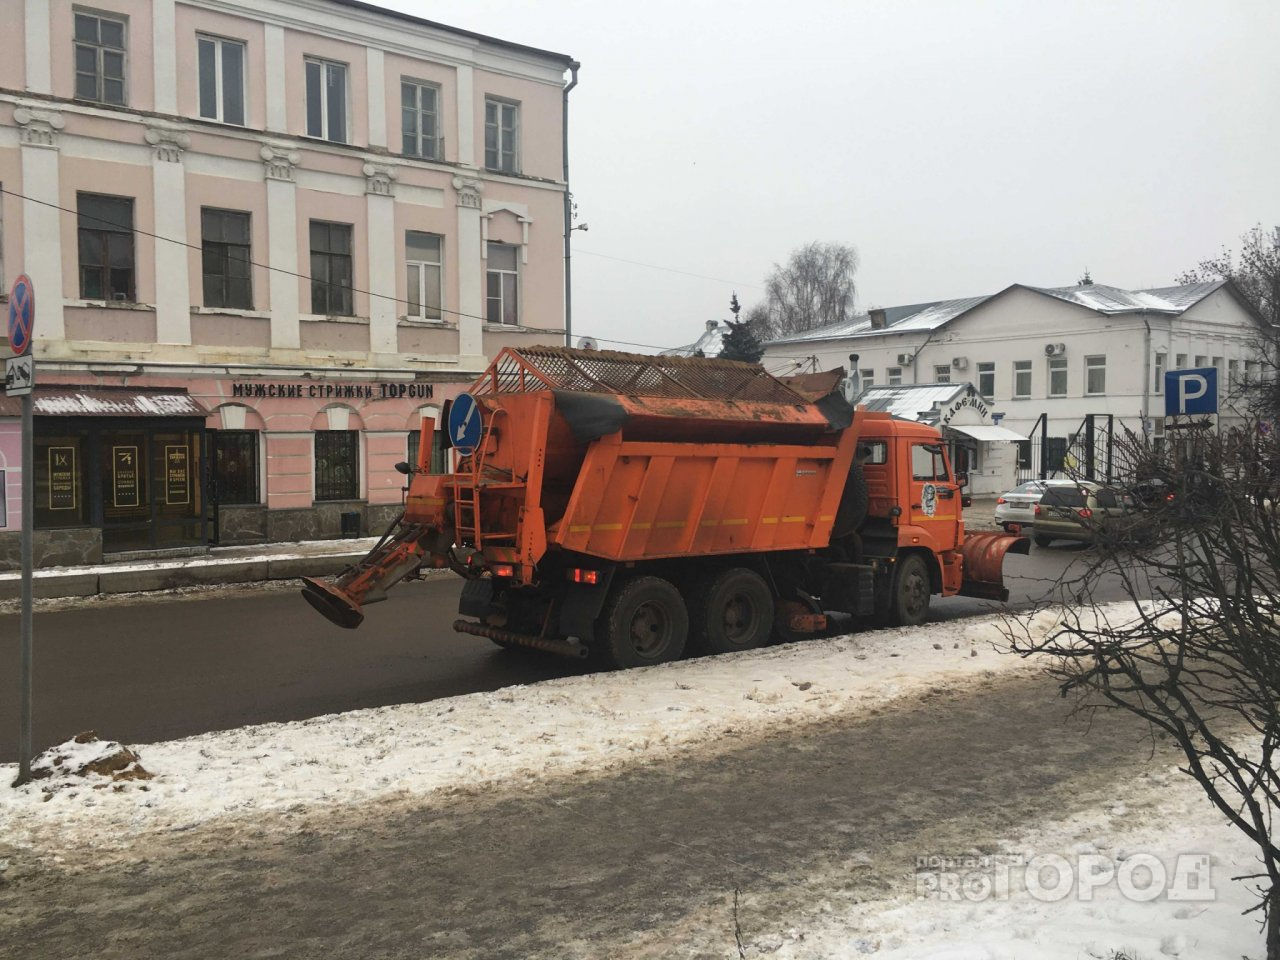 Улицы Владимира превратились в грязное месиво